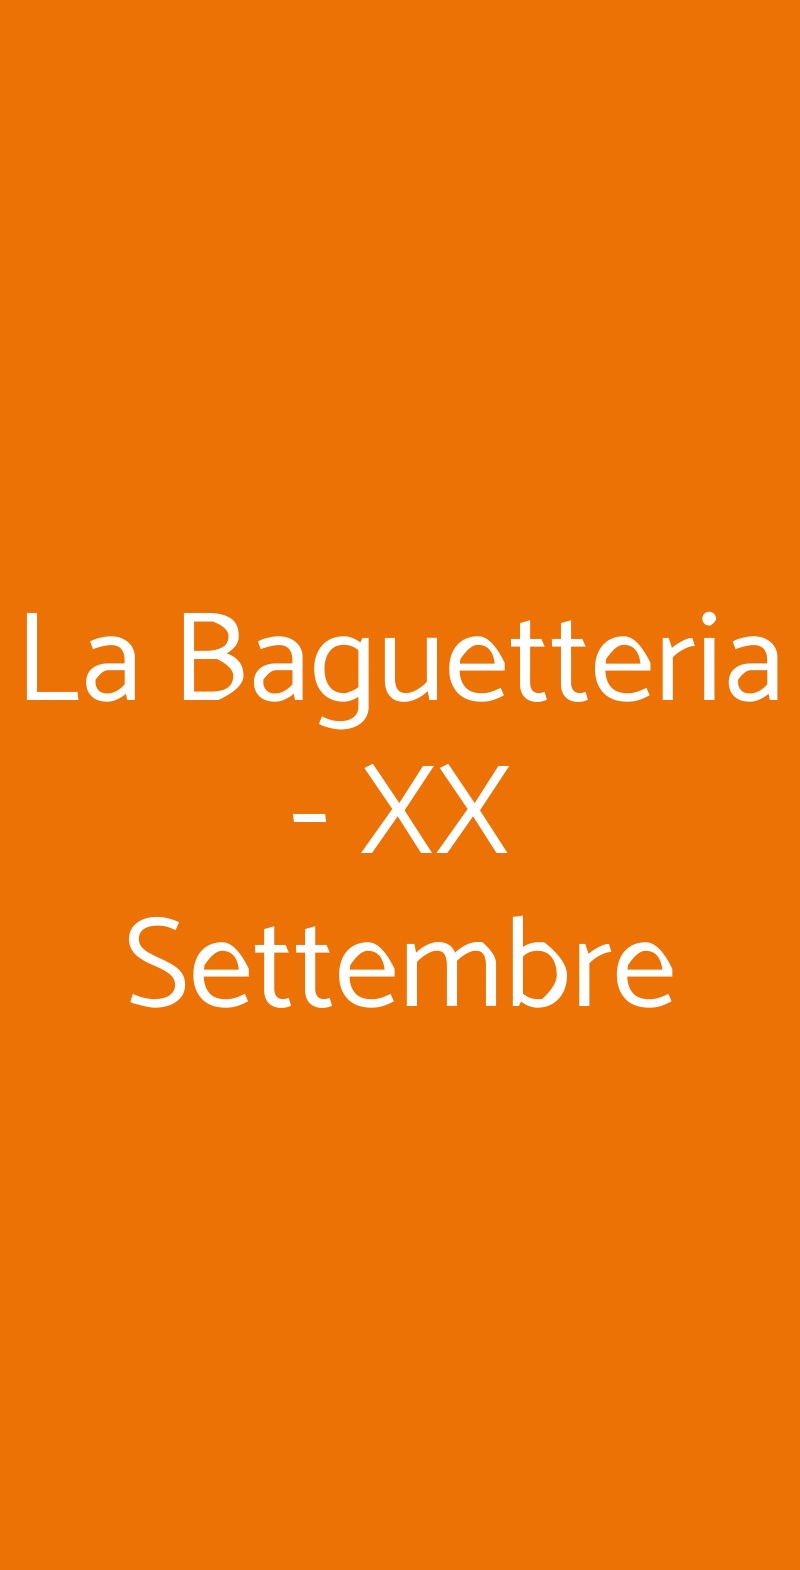 La Baguetteria - XX Settembre Roma menù 1 pagina